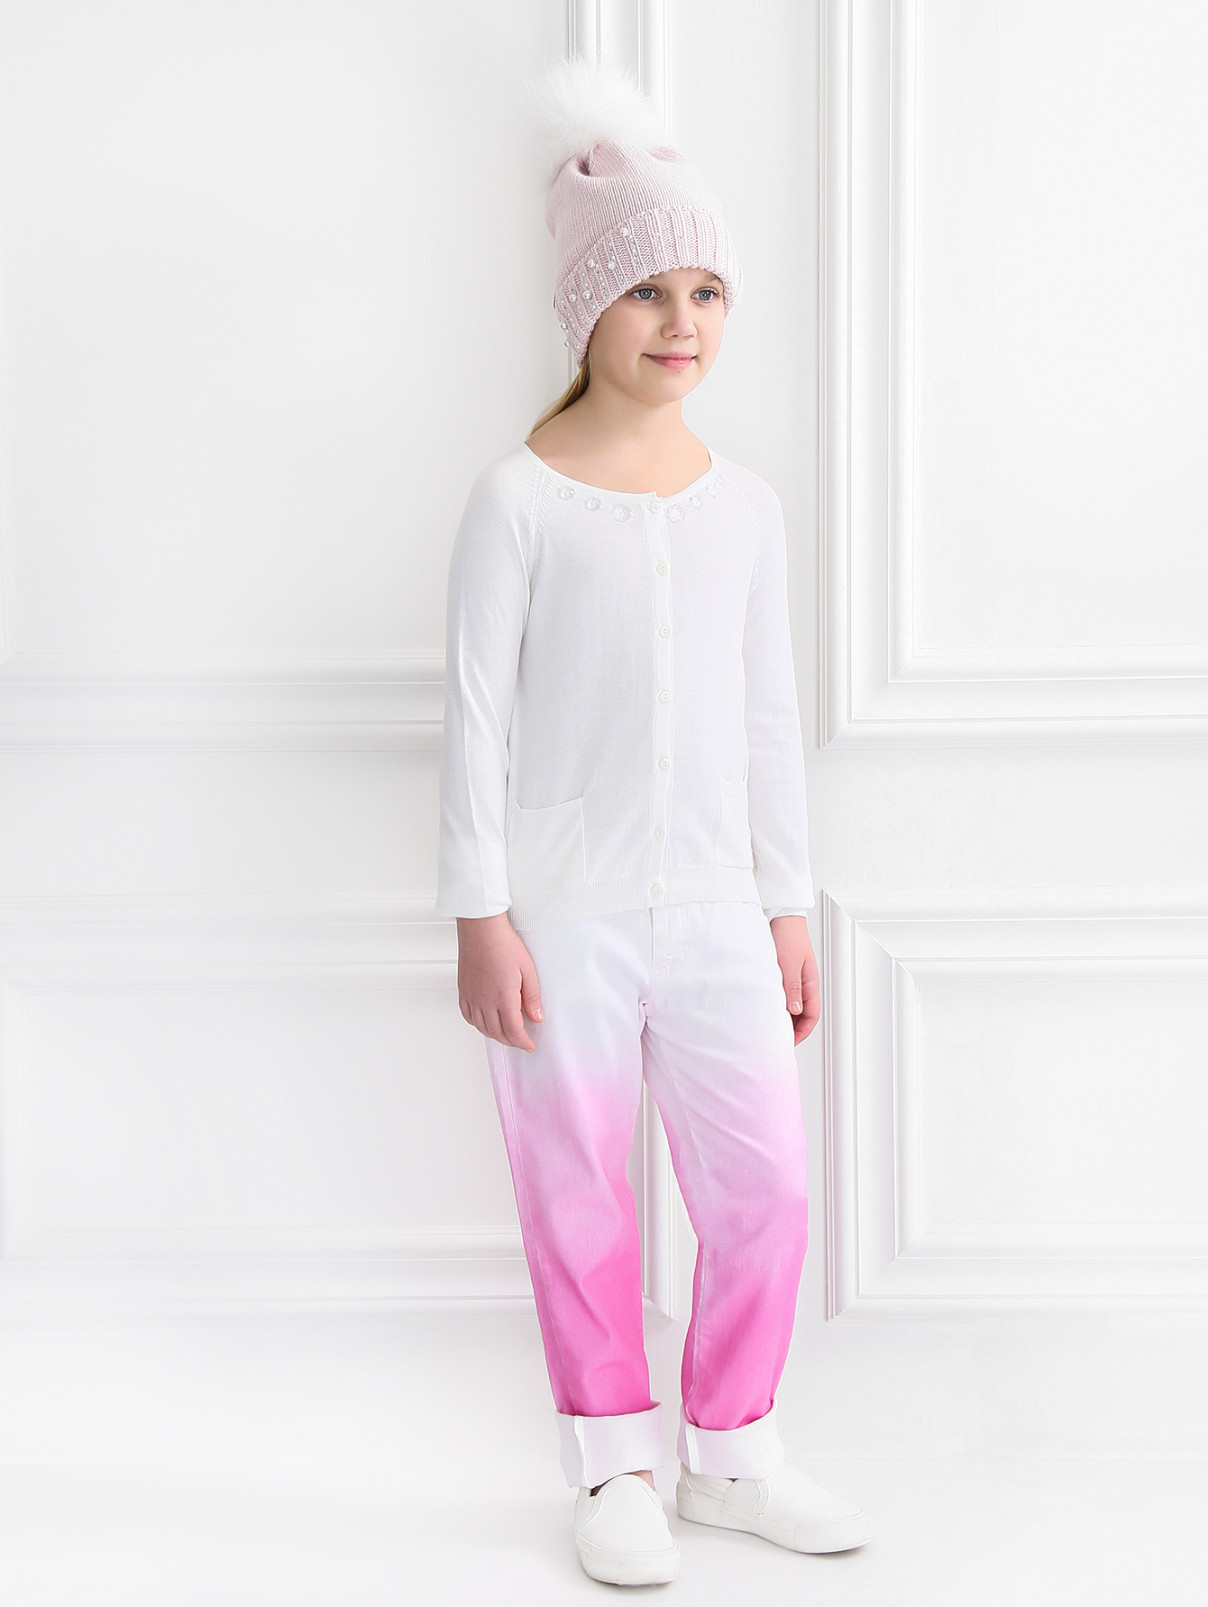 Хлопковые брюки с эффектом "омбрэ" MiMiSol  –  Модель Общий вид  – Цвет:  Розовый